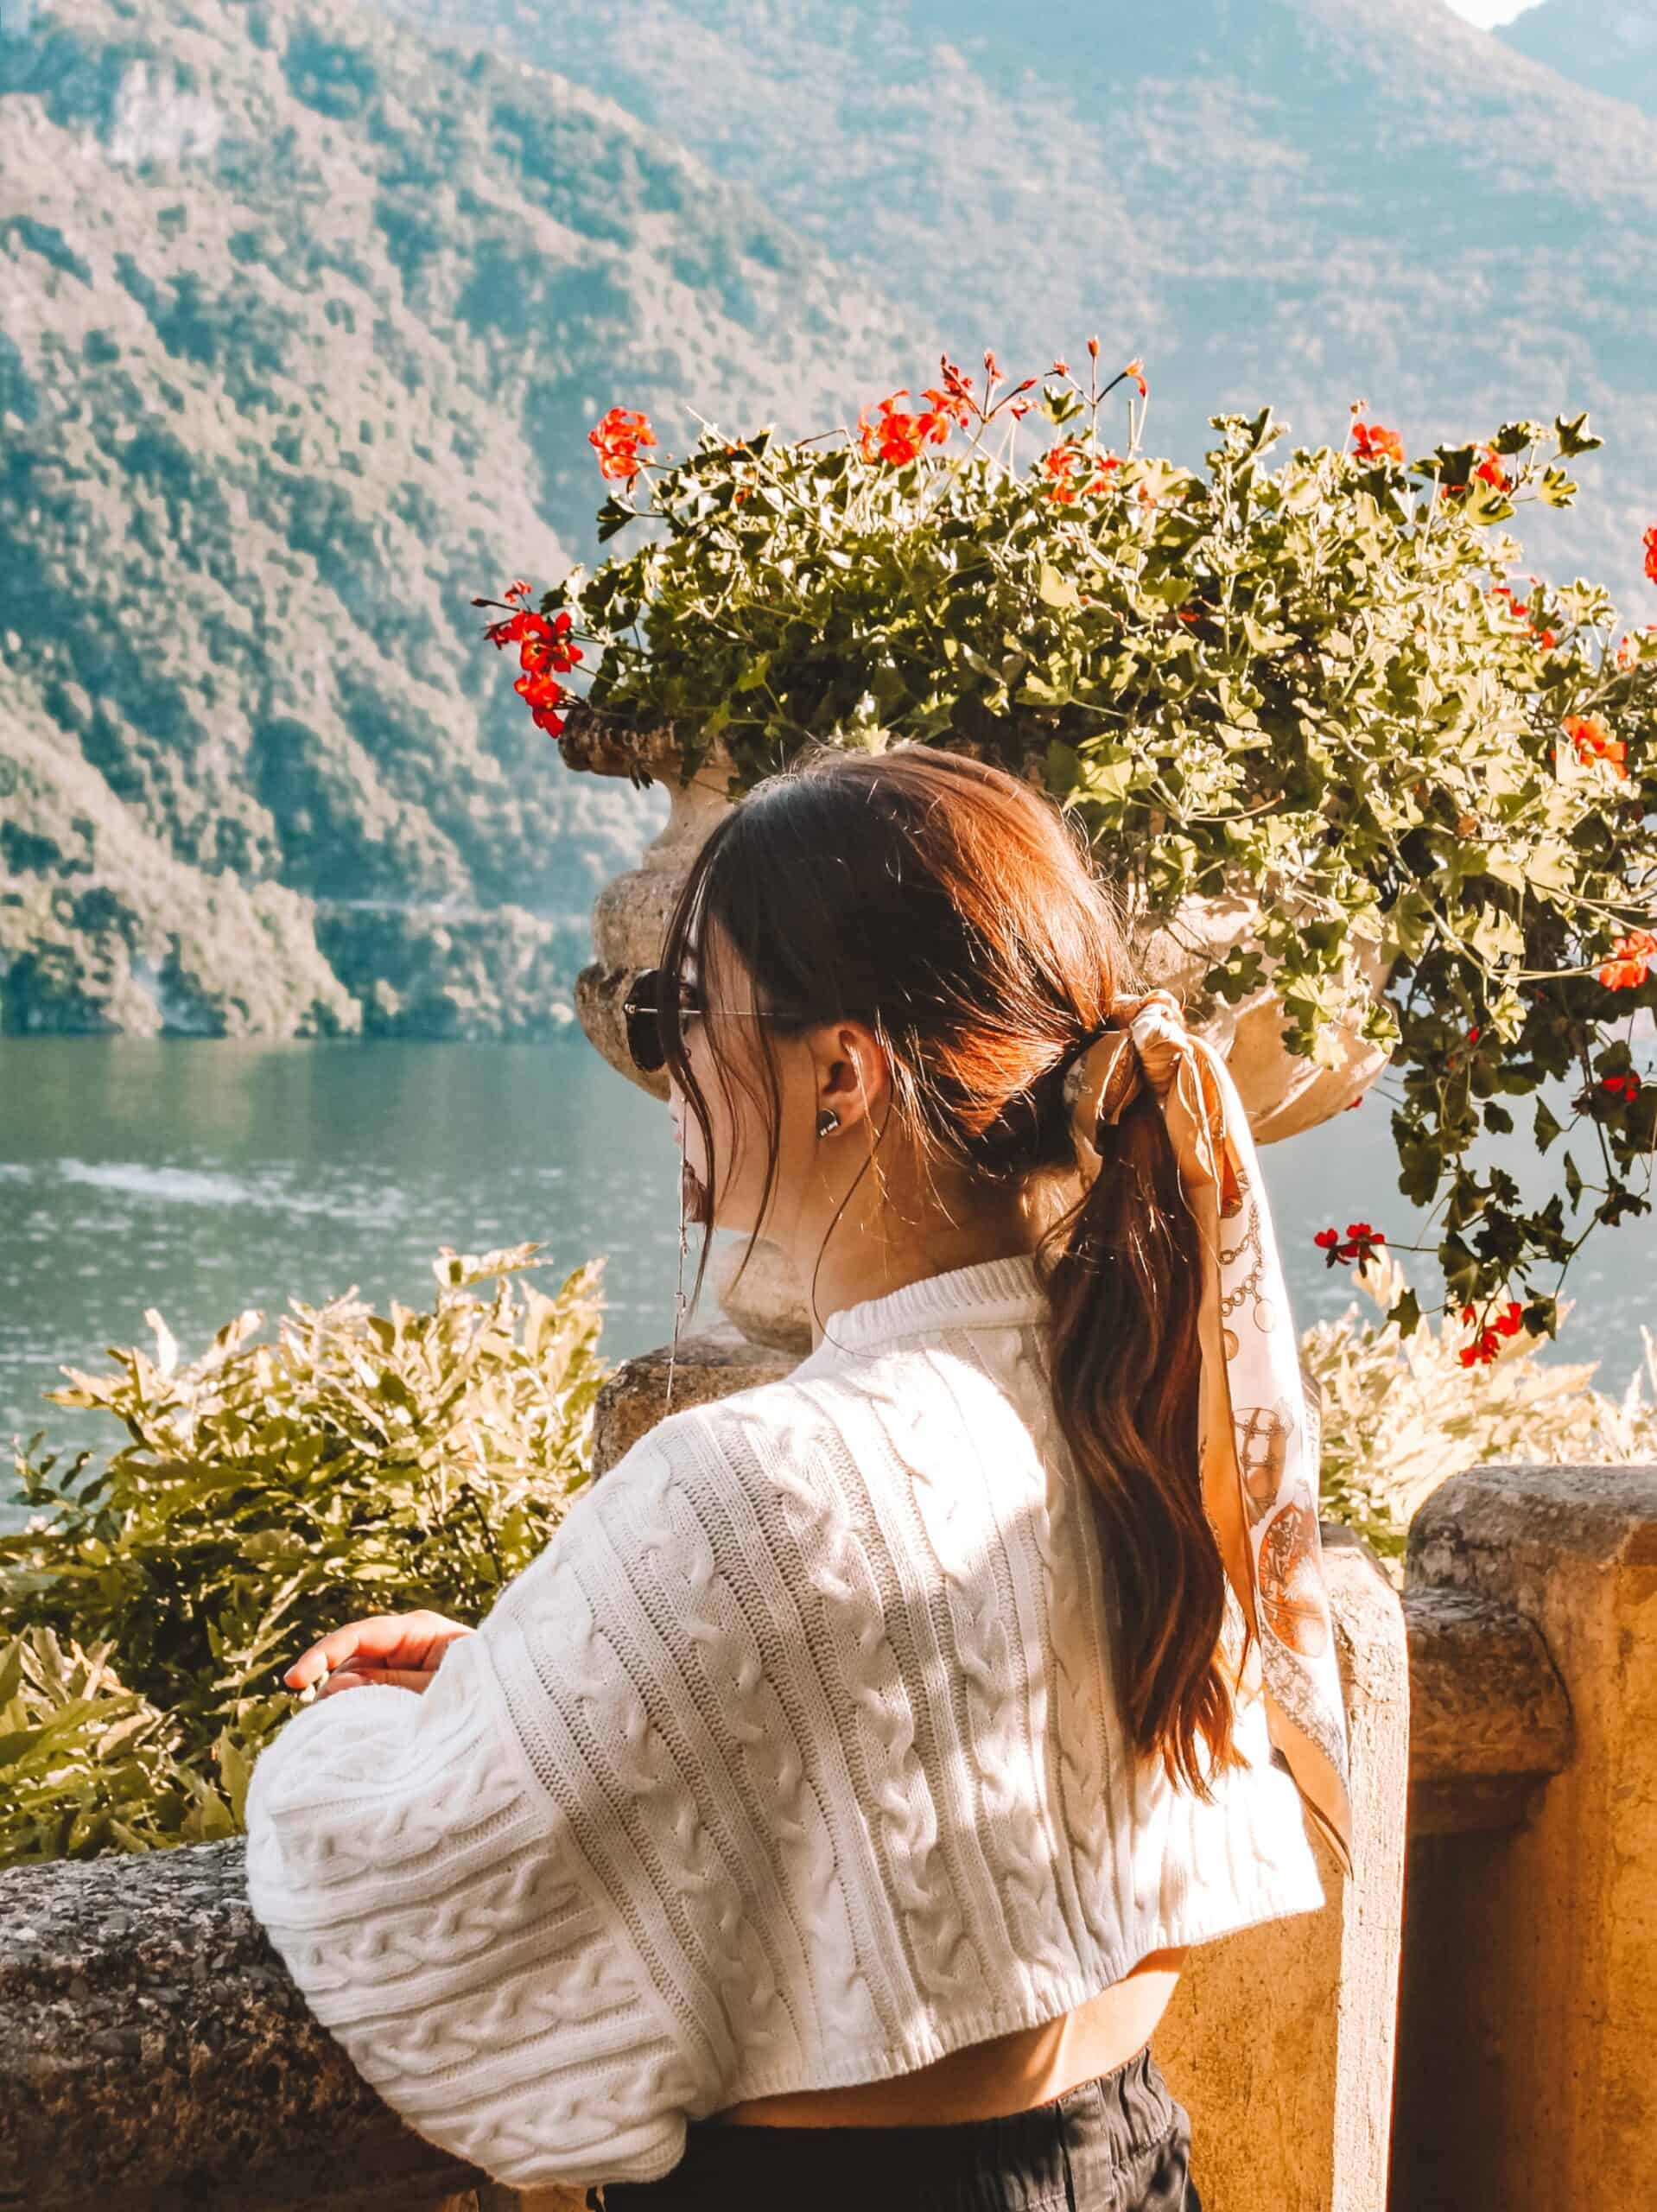 Enjoying the lake views at Villa Balbianello in Lake Como in October